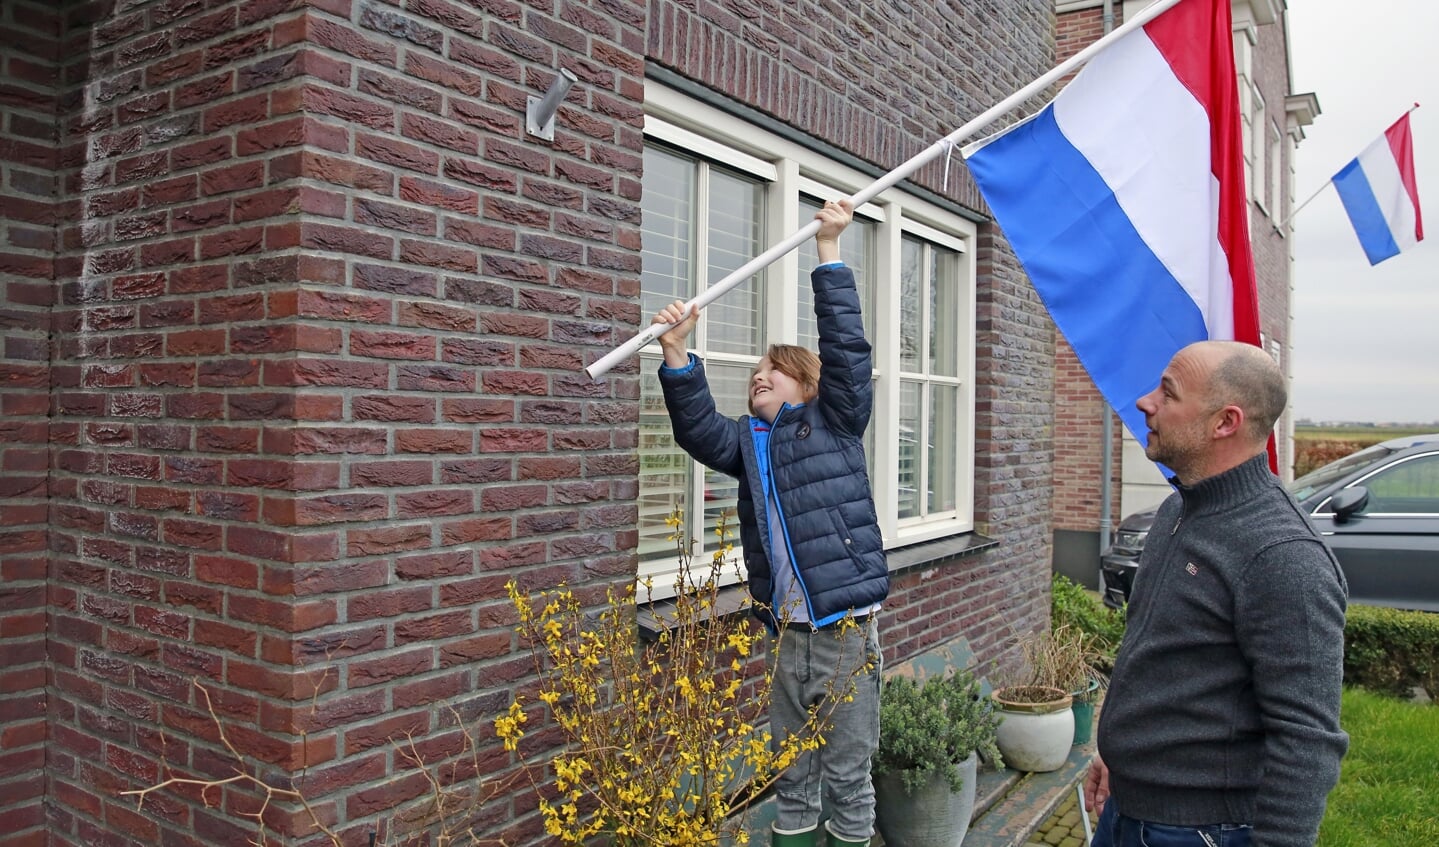 Stefan en zijn zoontje hingen vrijdagochtend de vlag uit als steunbetuiging.